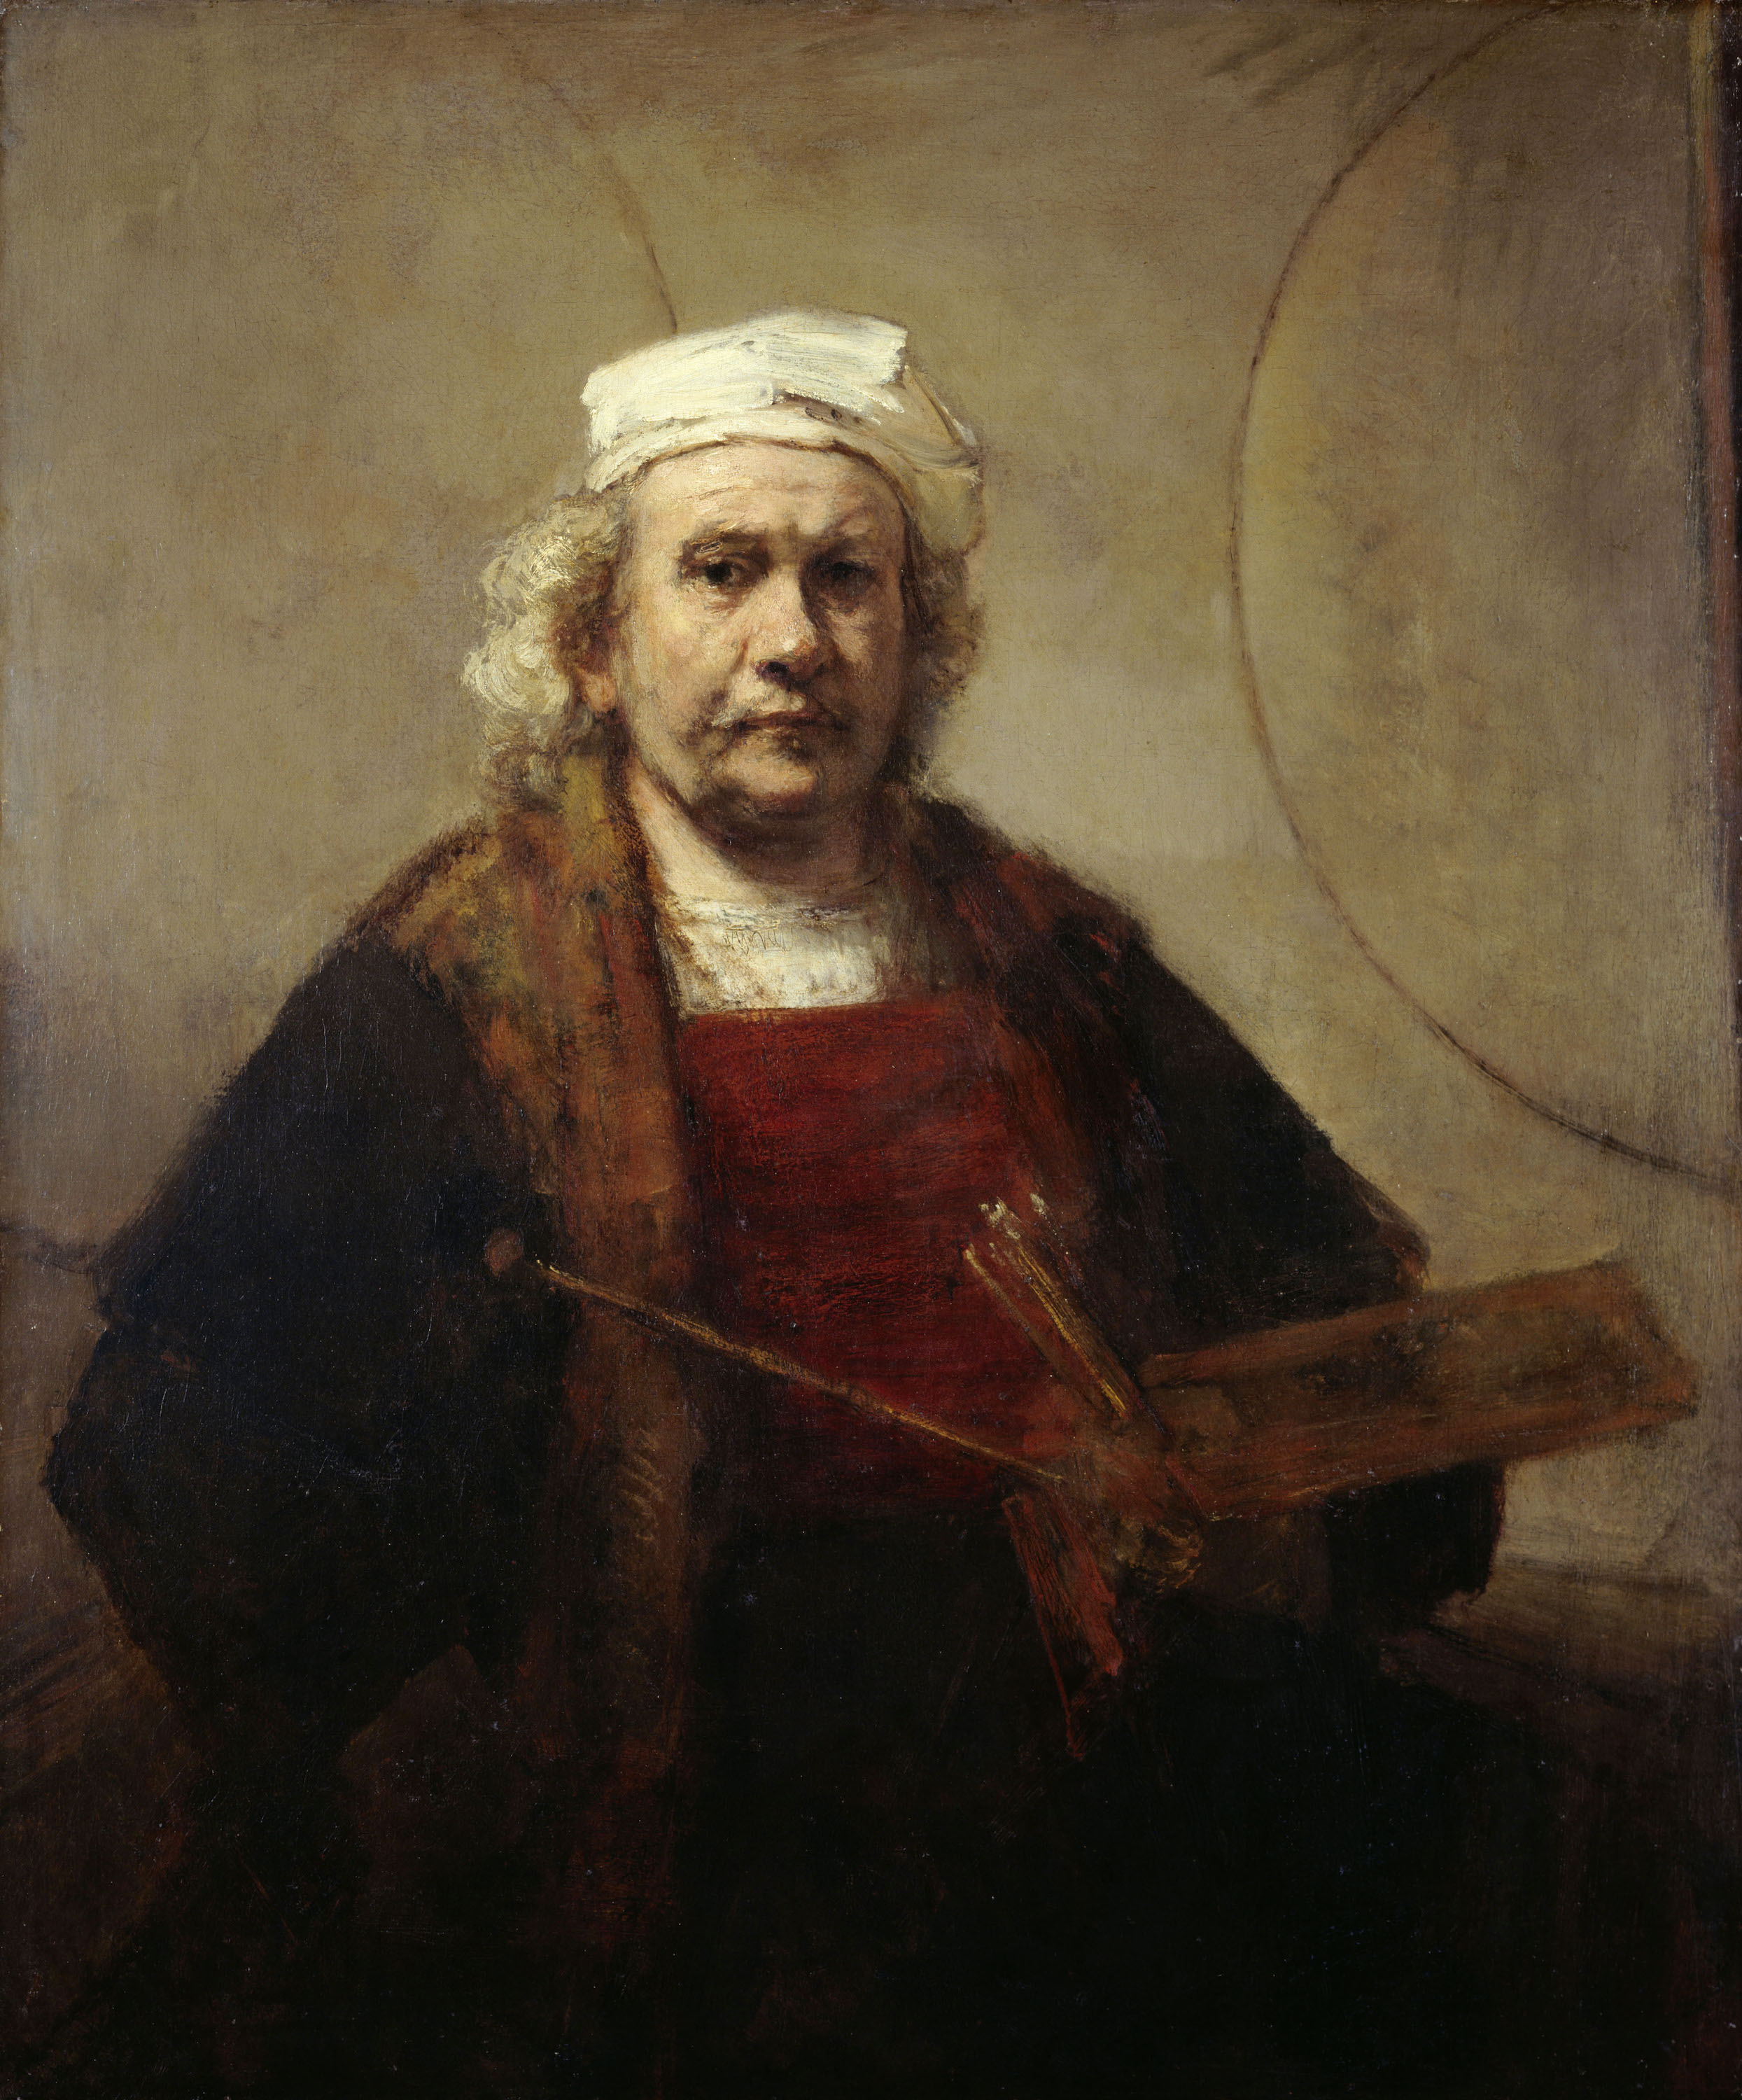 Önarckép két körrel by Rembrandt van Rijn - 1665–1669 körül - 114,3 cm × 94 cm 